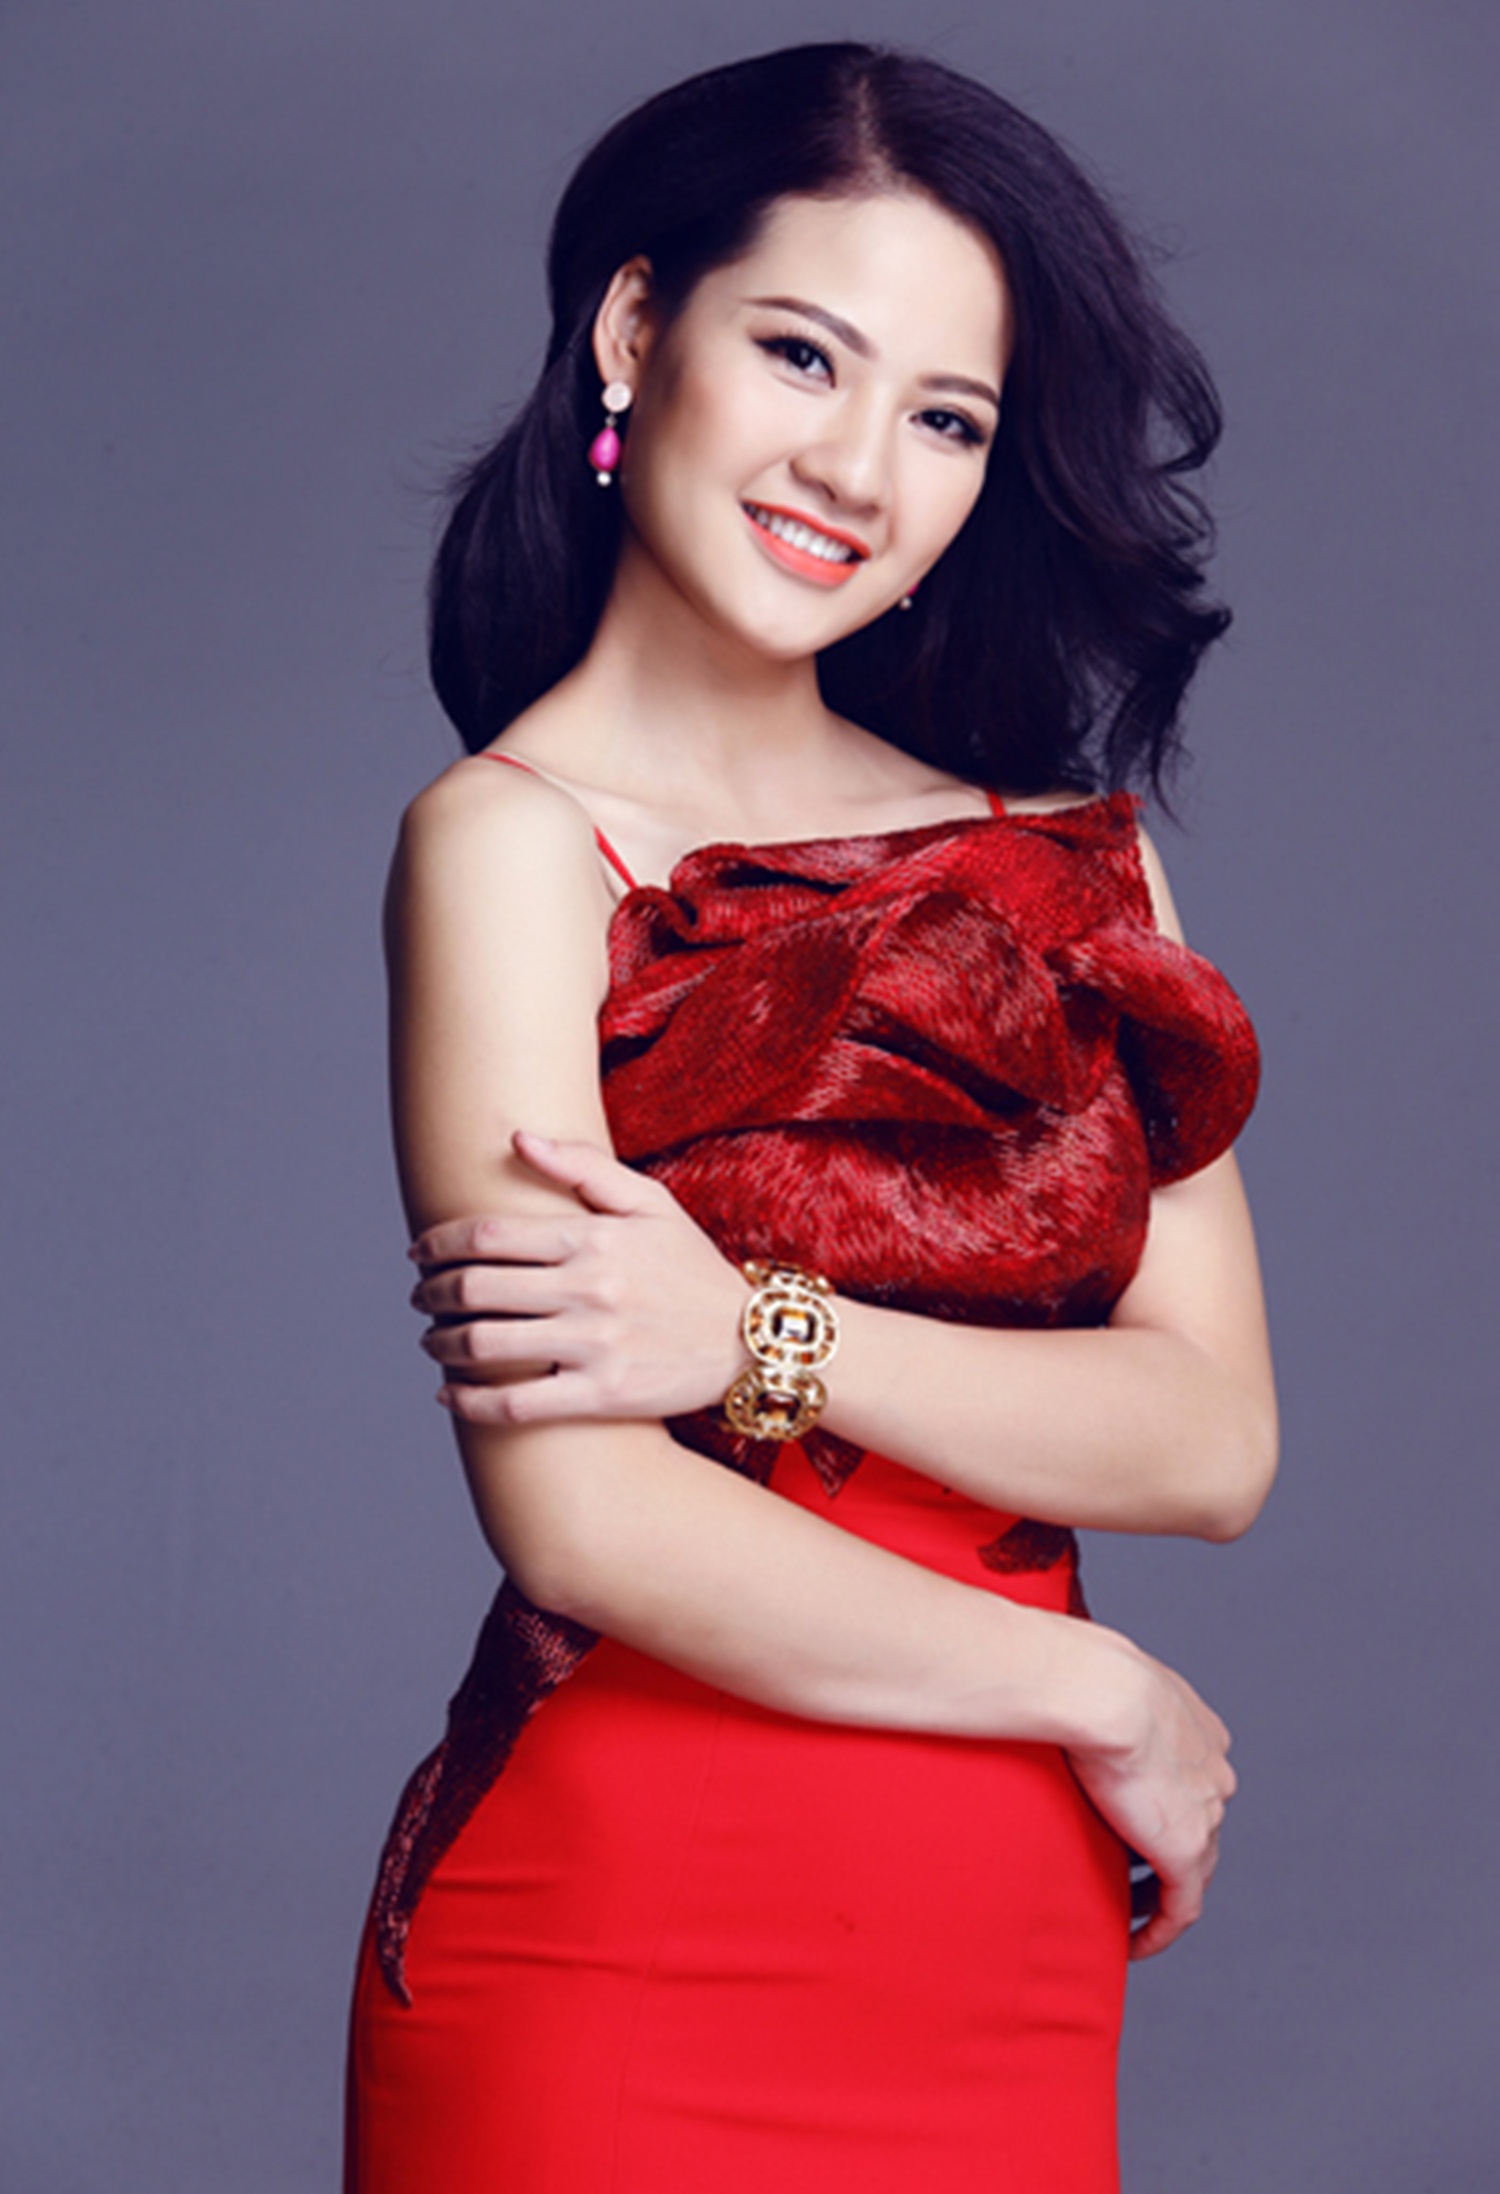 Năm 2013, cô đại diện Việt Nam dự thi Hoa hậu quý bà Thế giới 2013 tại Quảng Châu (Trung Quốc) và lọt top 6.